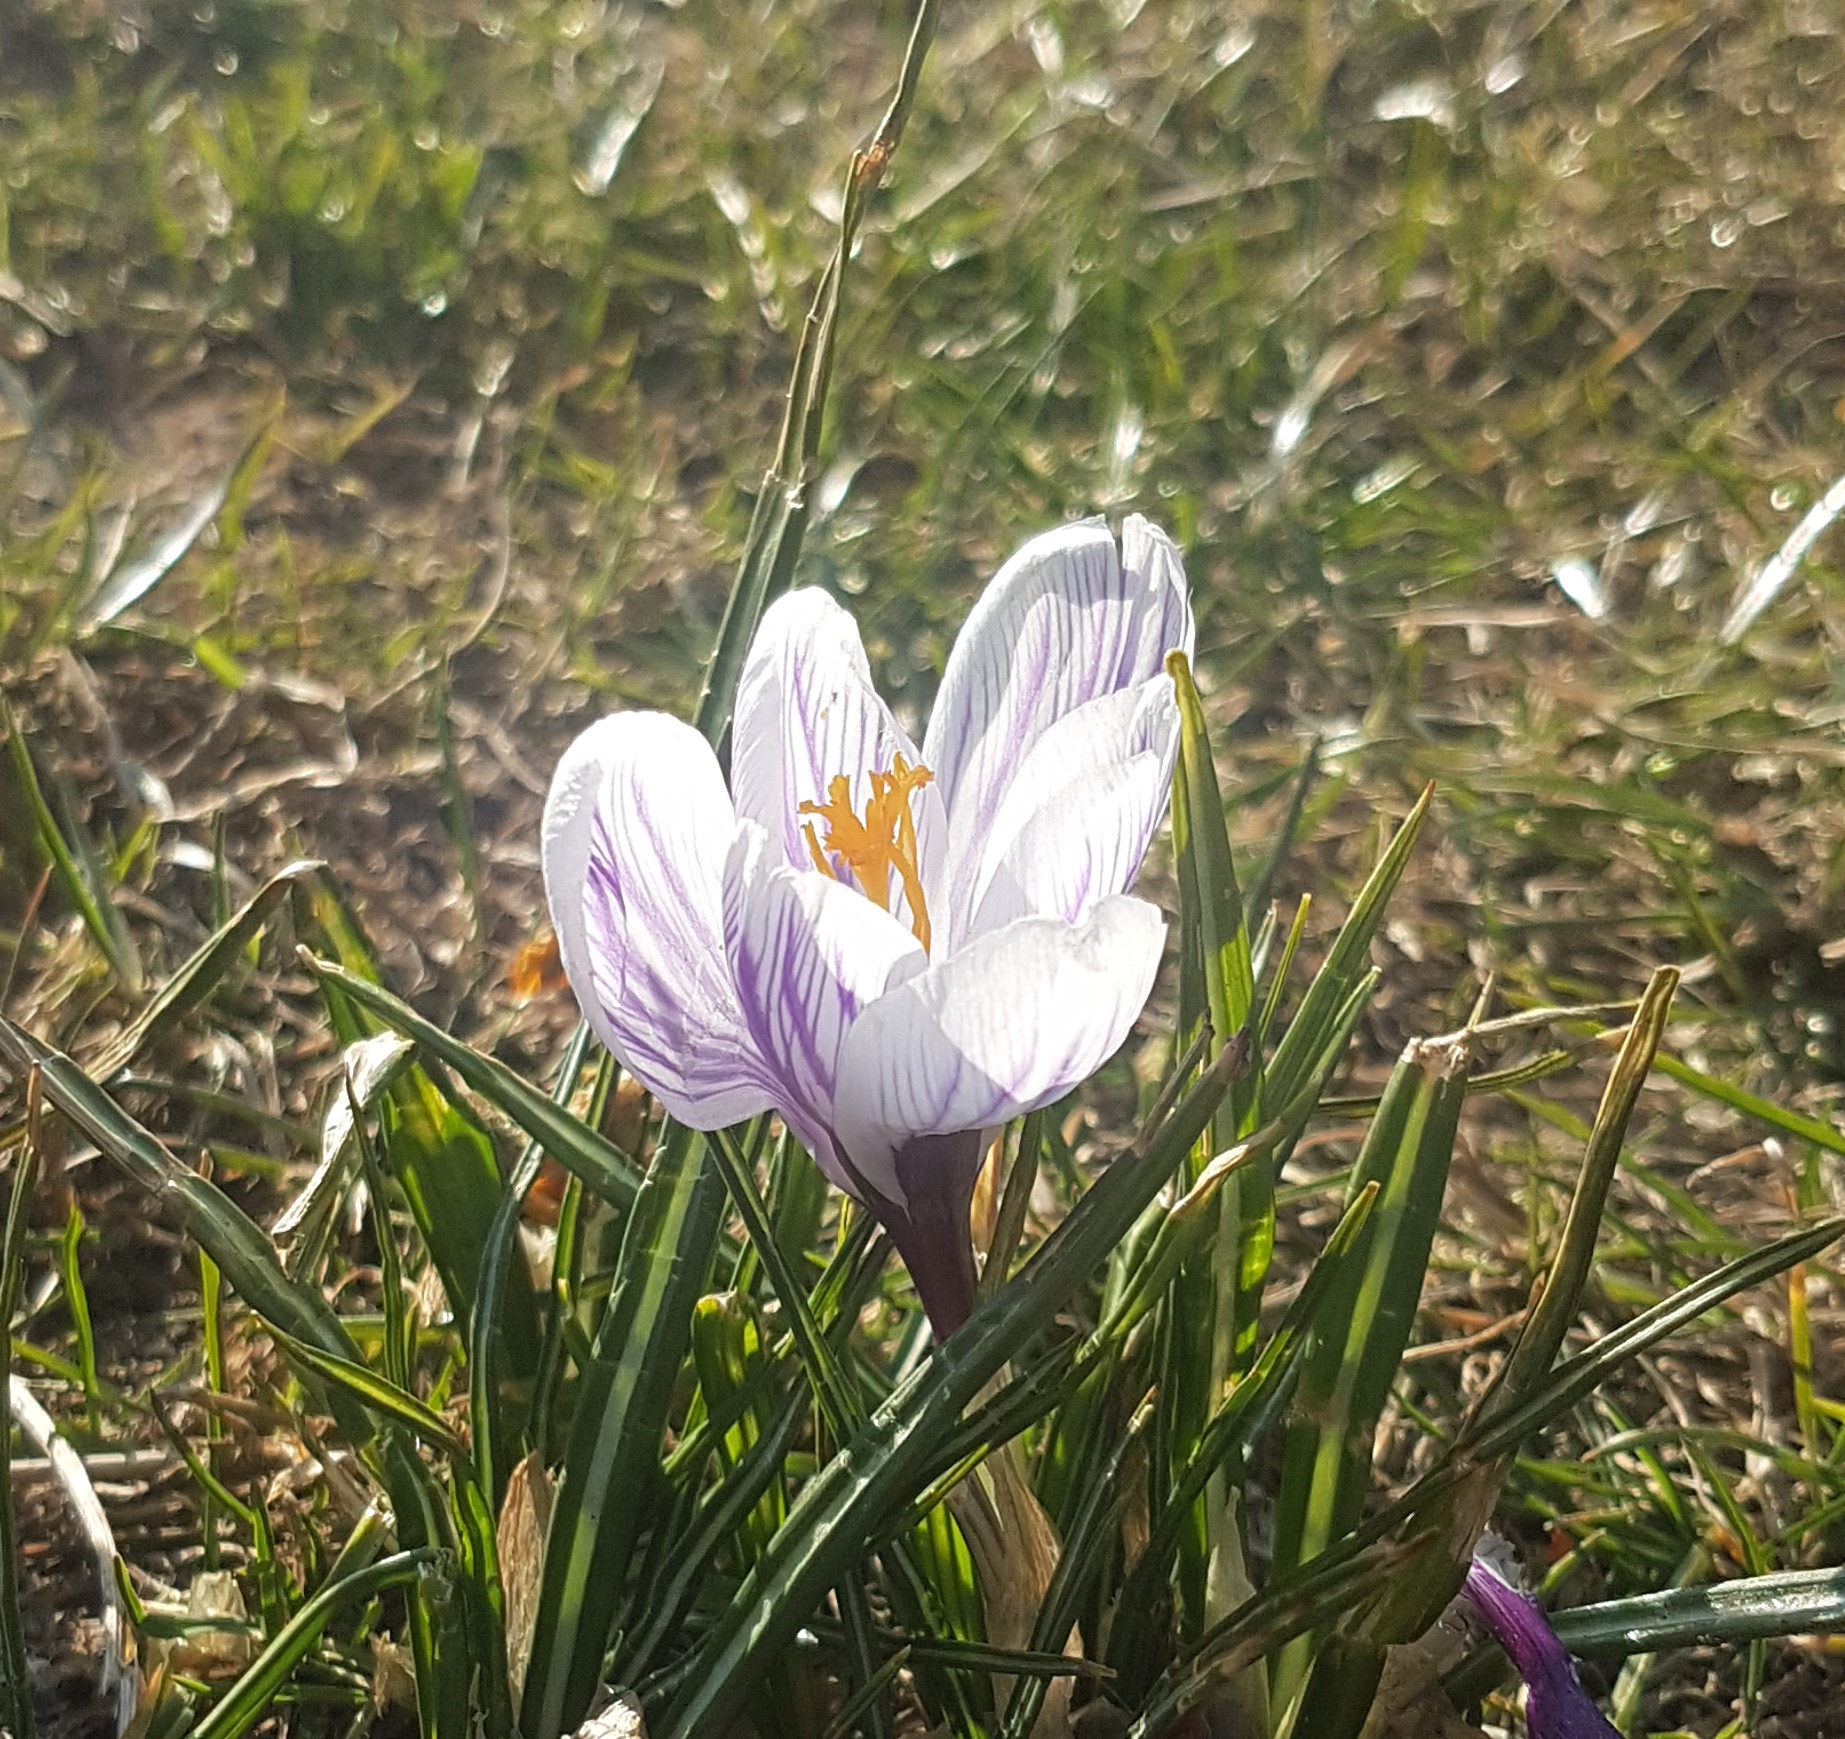 Biało-fioletowy krokus wśród wiosennych traw